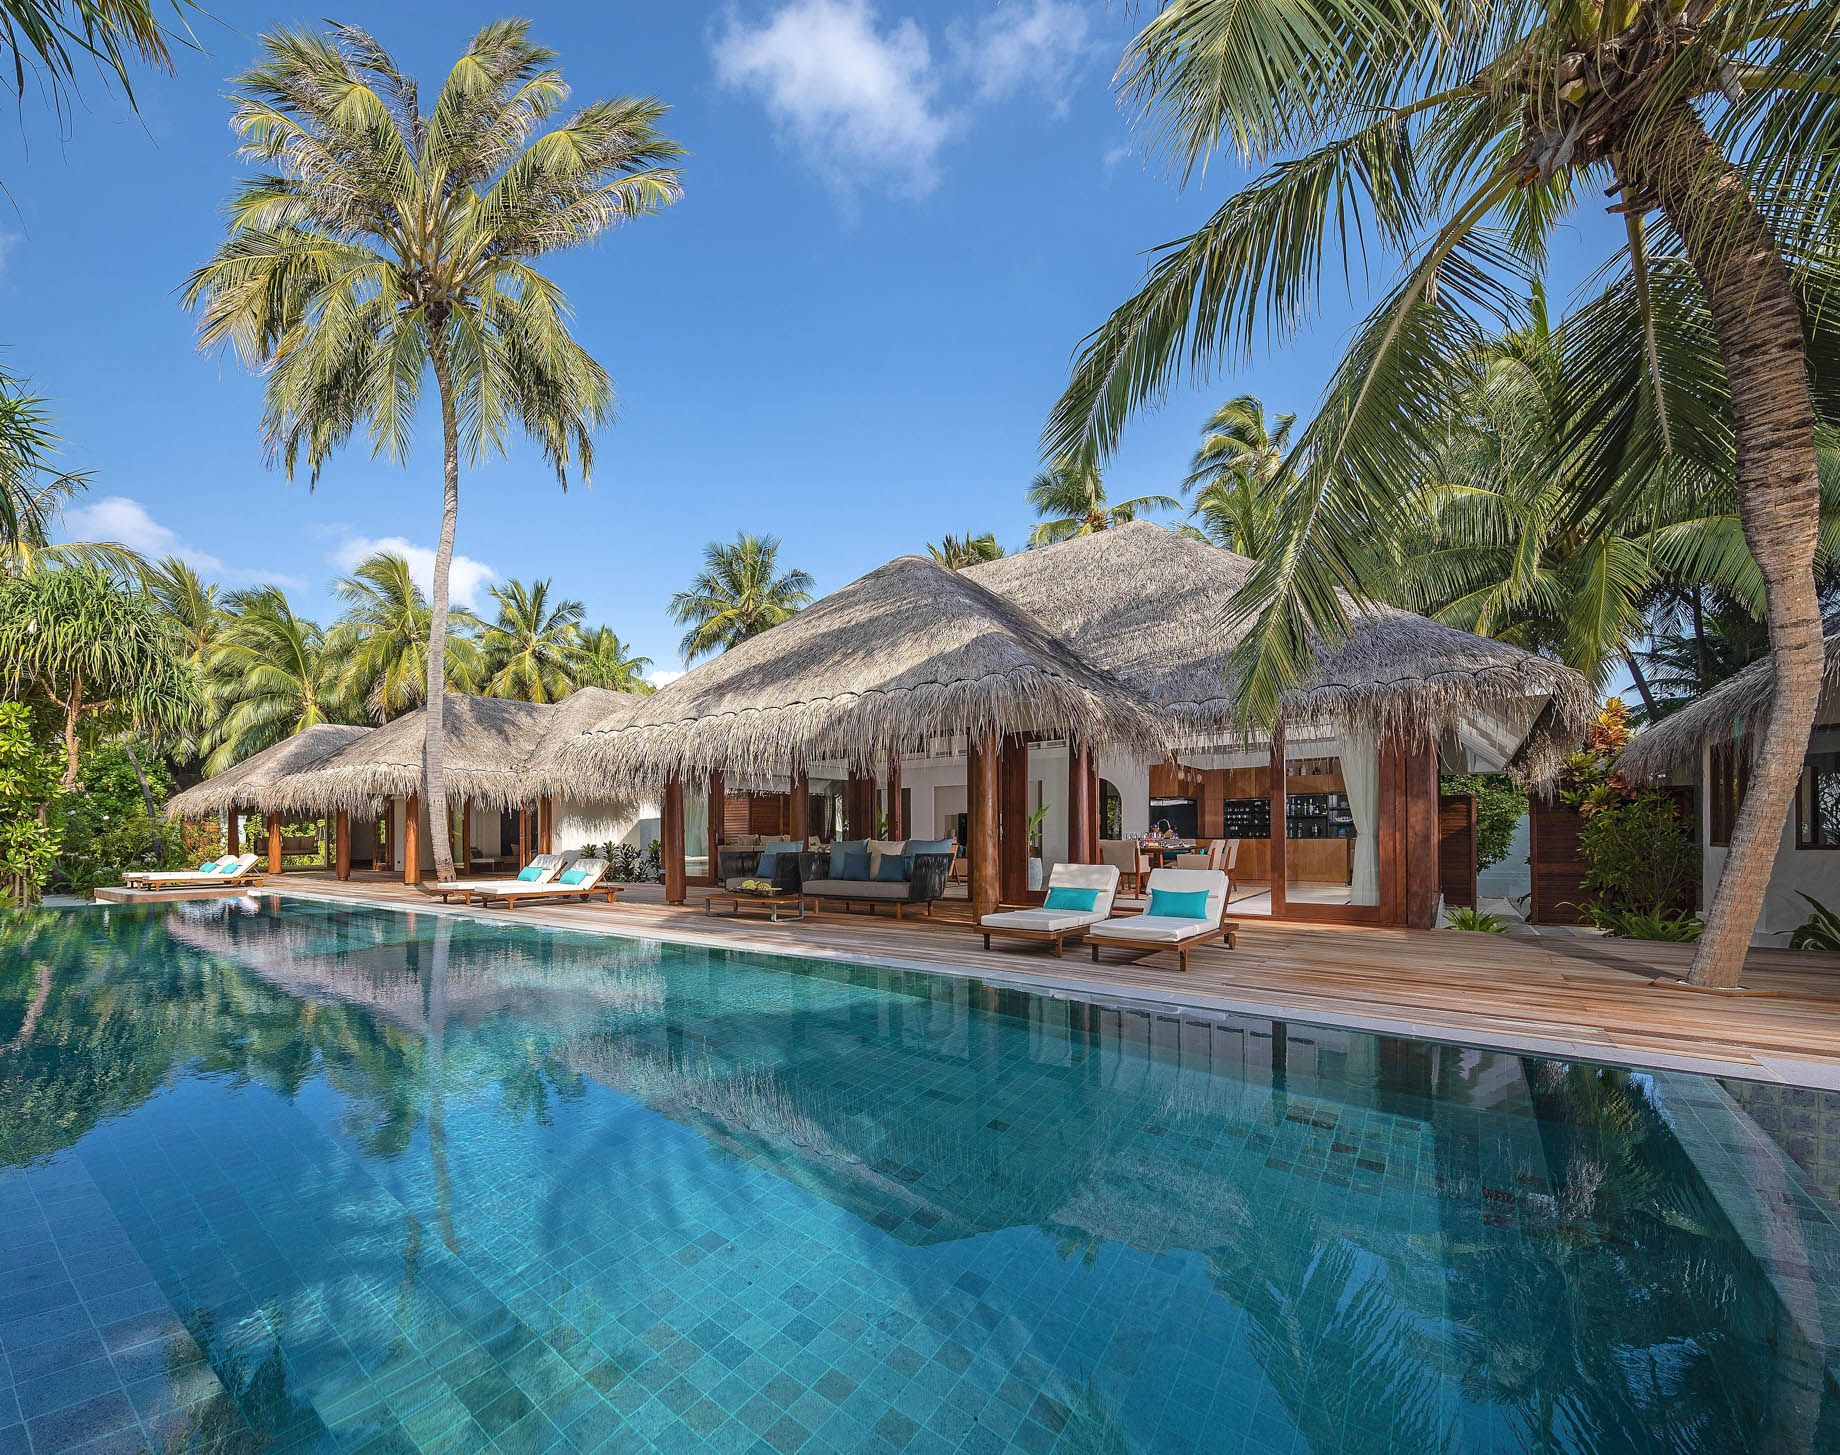 Anantara Kihavah Maldives Villas Resort – Baa Atoll, Maldives – Three Bedroom Beach Pool Residence Exterior View